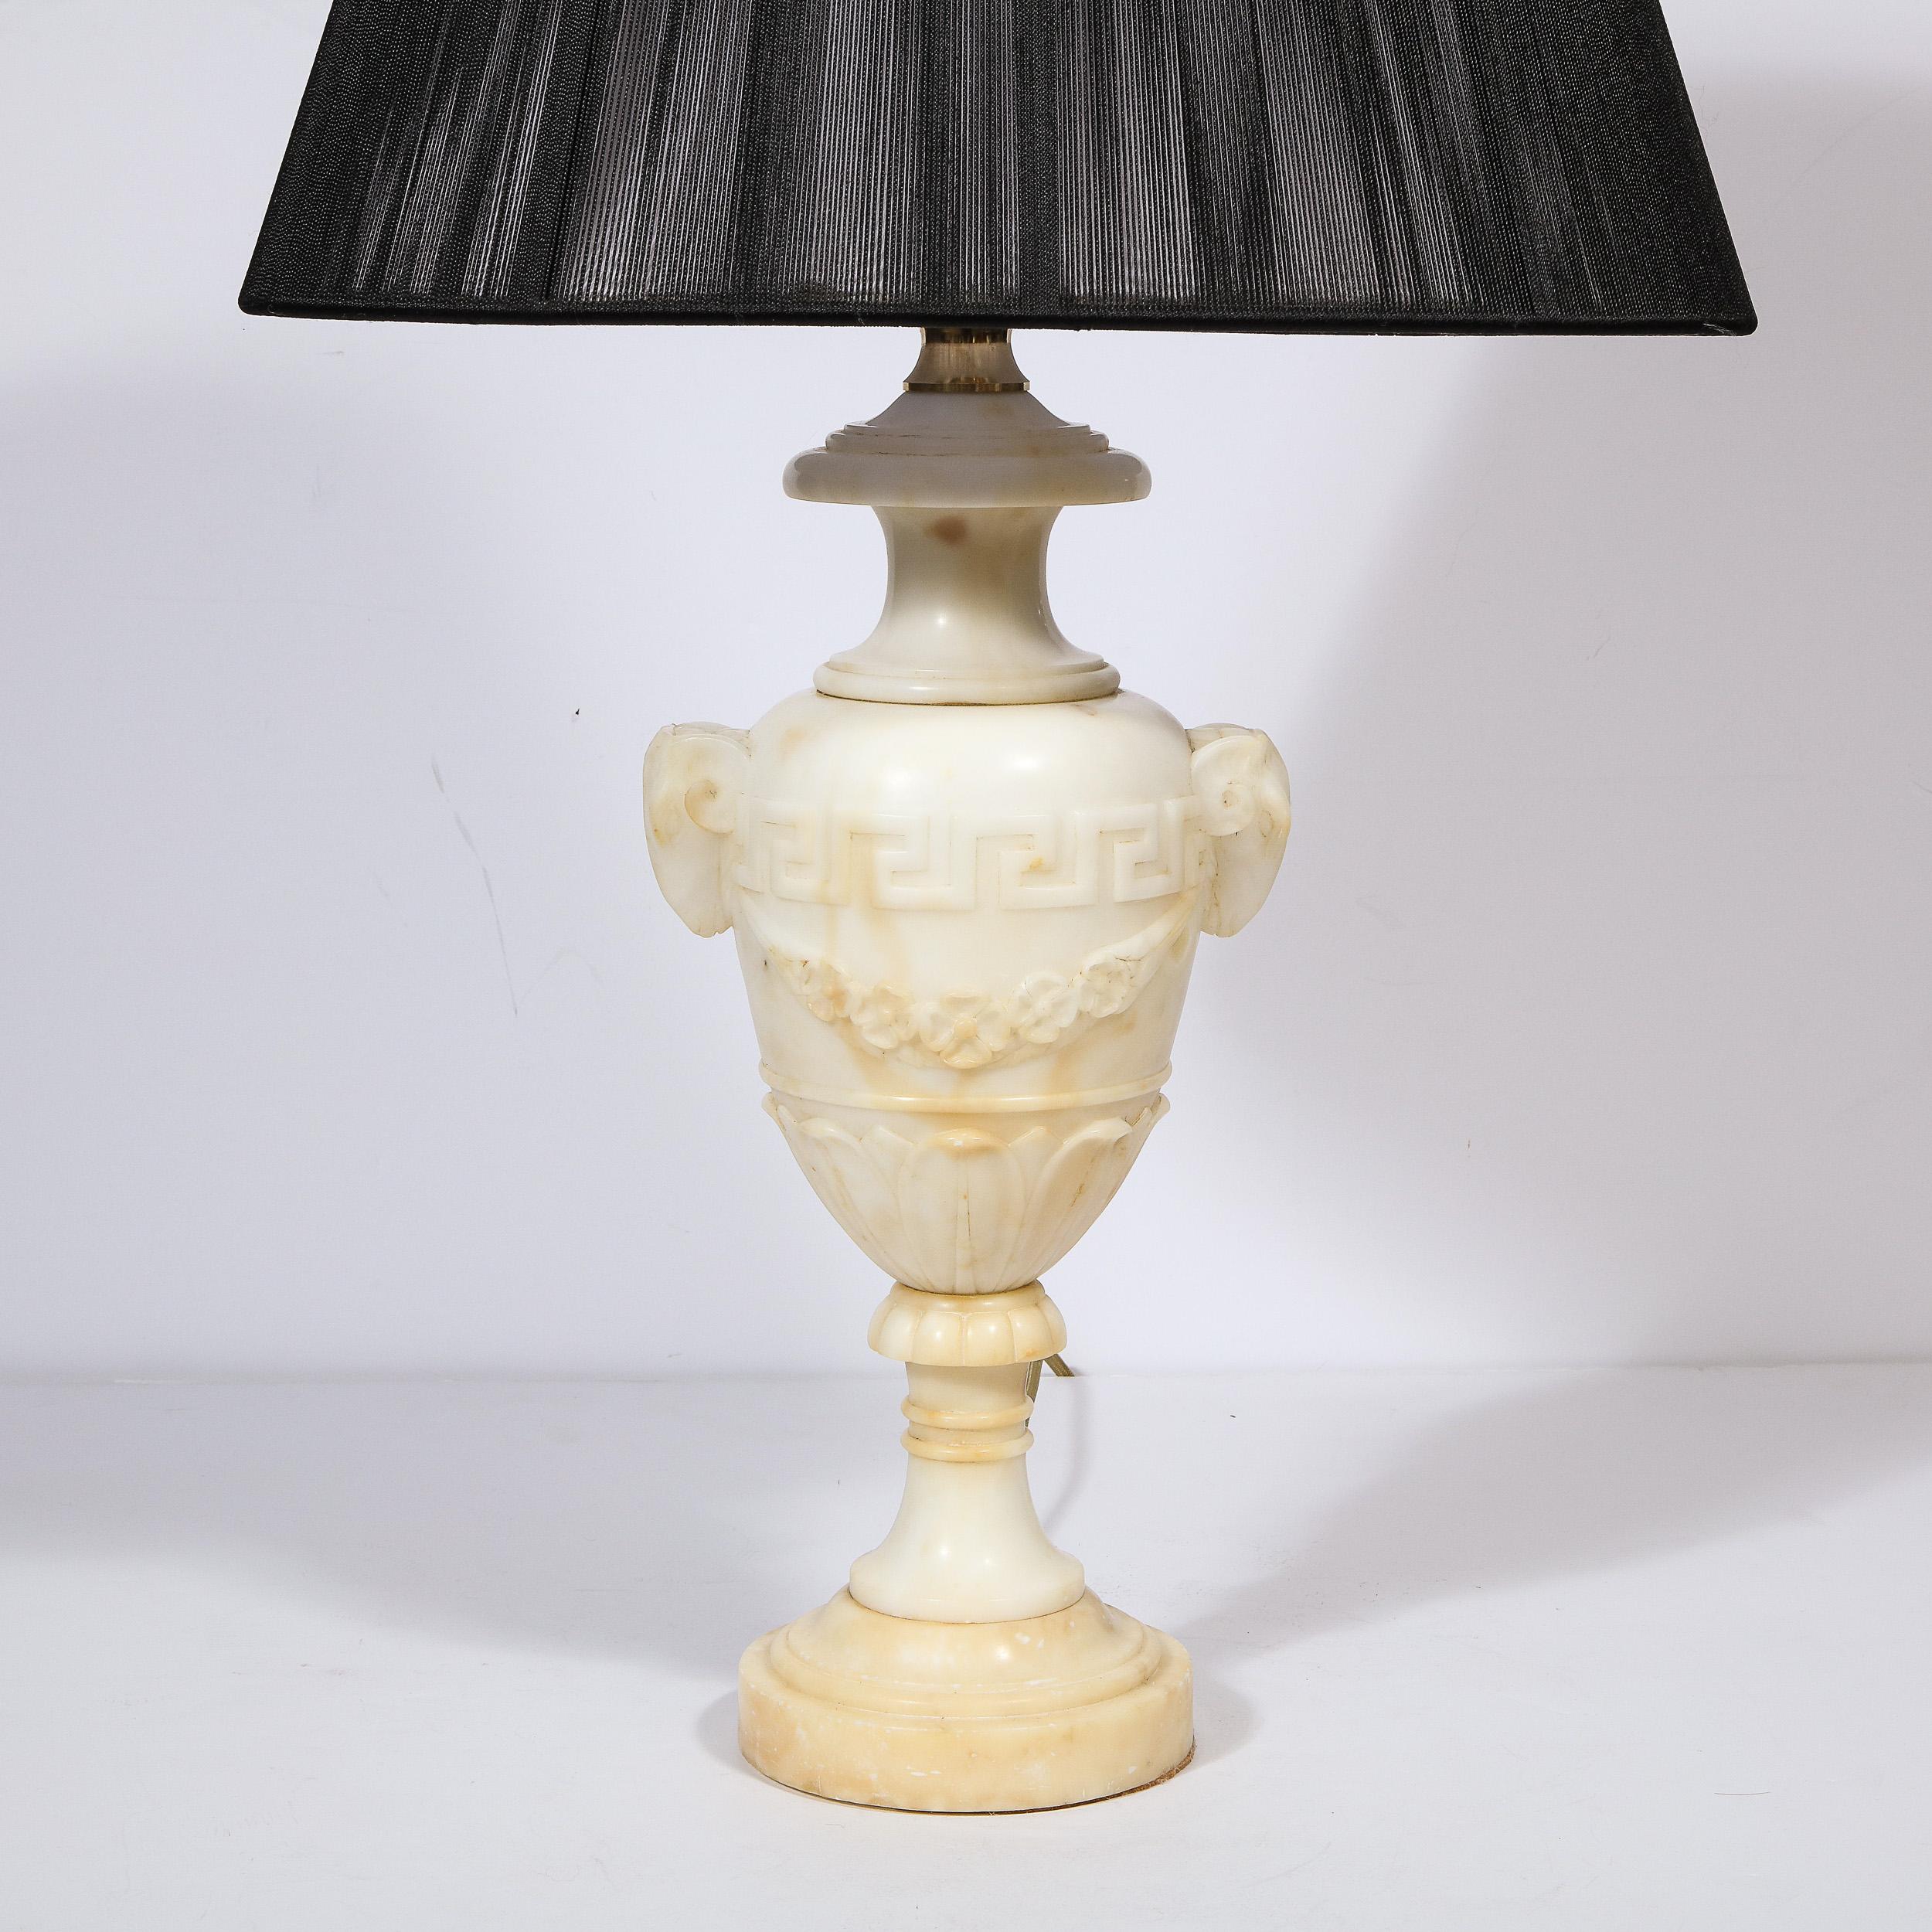 Cette élégante paire de lampes de table en albâtre de style Hollywood Regency a été réalisée en France vers 1940.  Réalisées dans un somptueux albâtre bigarré de couleur crème, ces lampes ont été sculptées à la main avec une richesse de détails